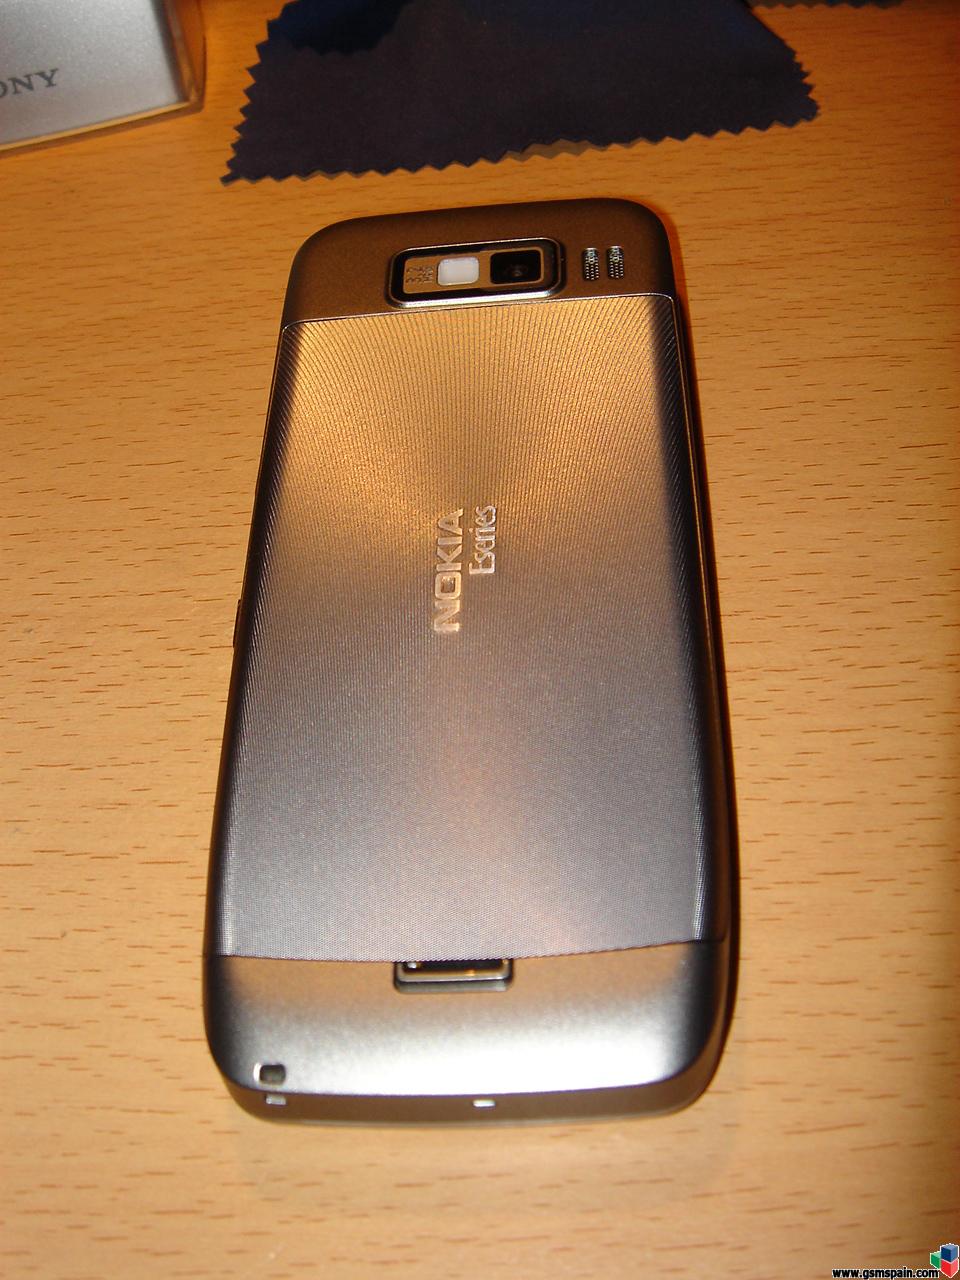 Vendo Nokia E52